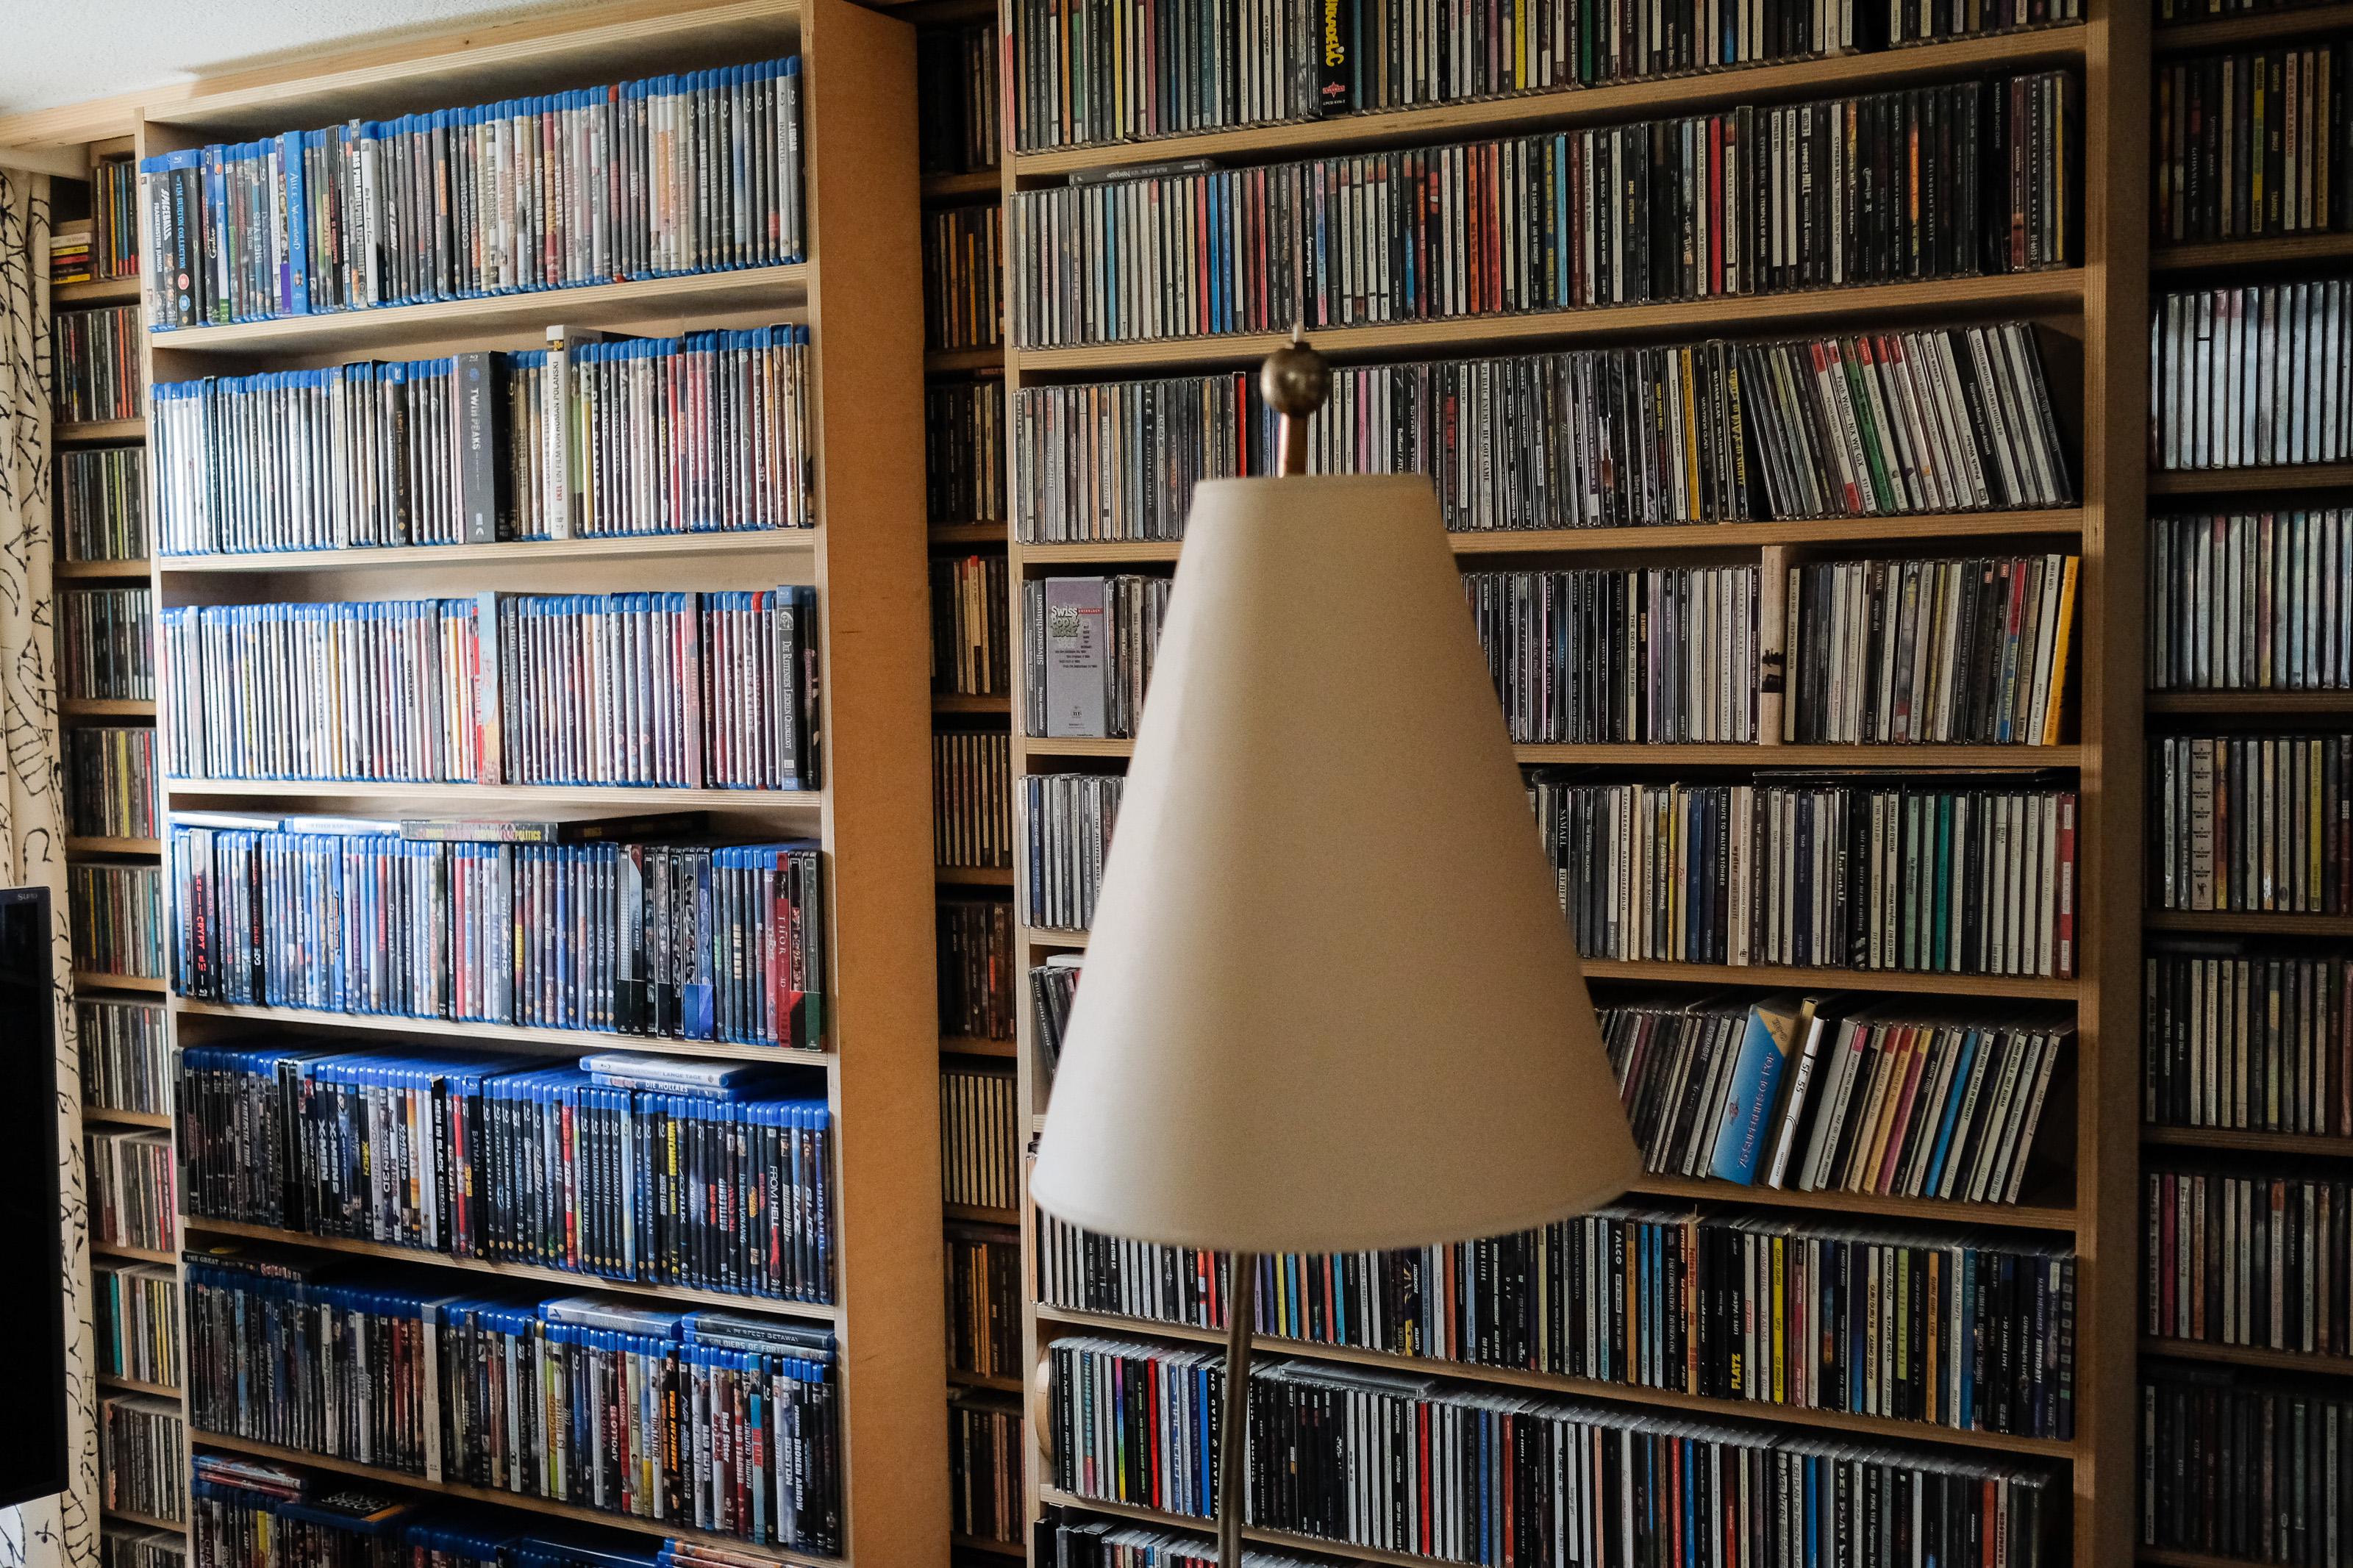 Die Musiksammlung umfasst Tausende von CDs. Foto: Jan Graber, 2018.